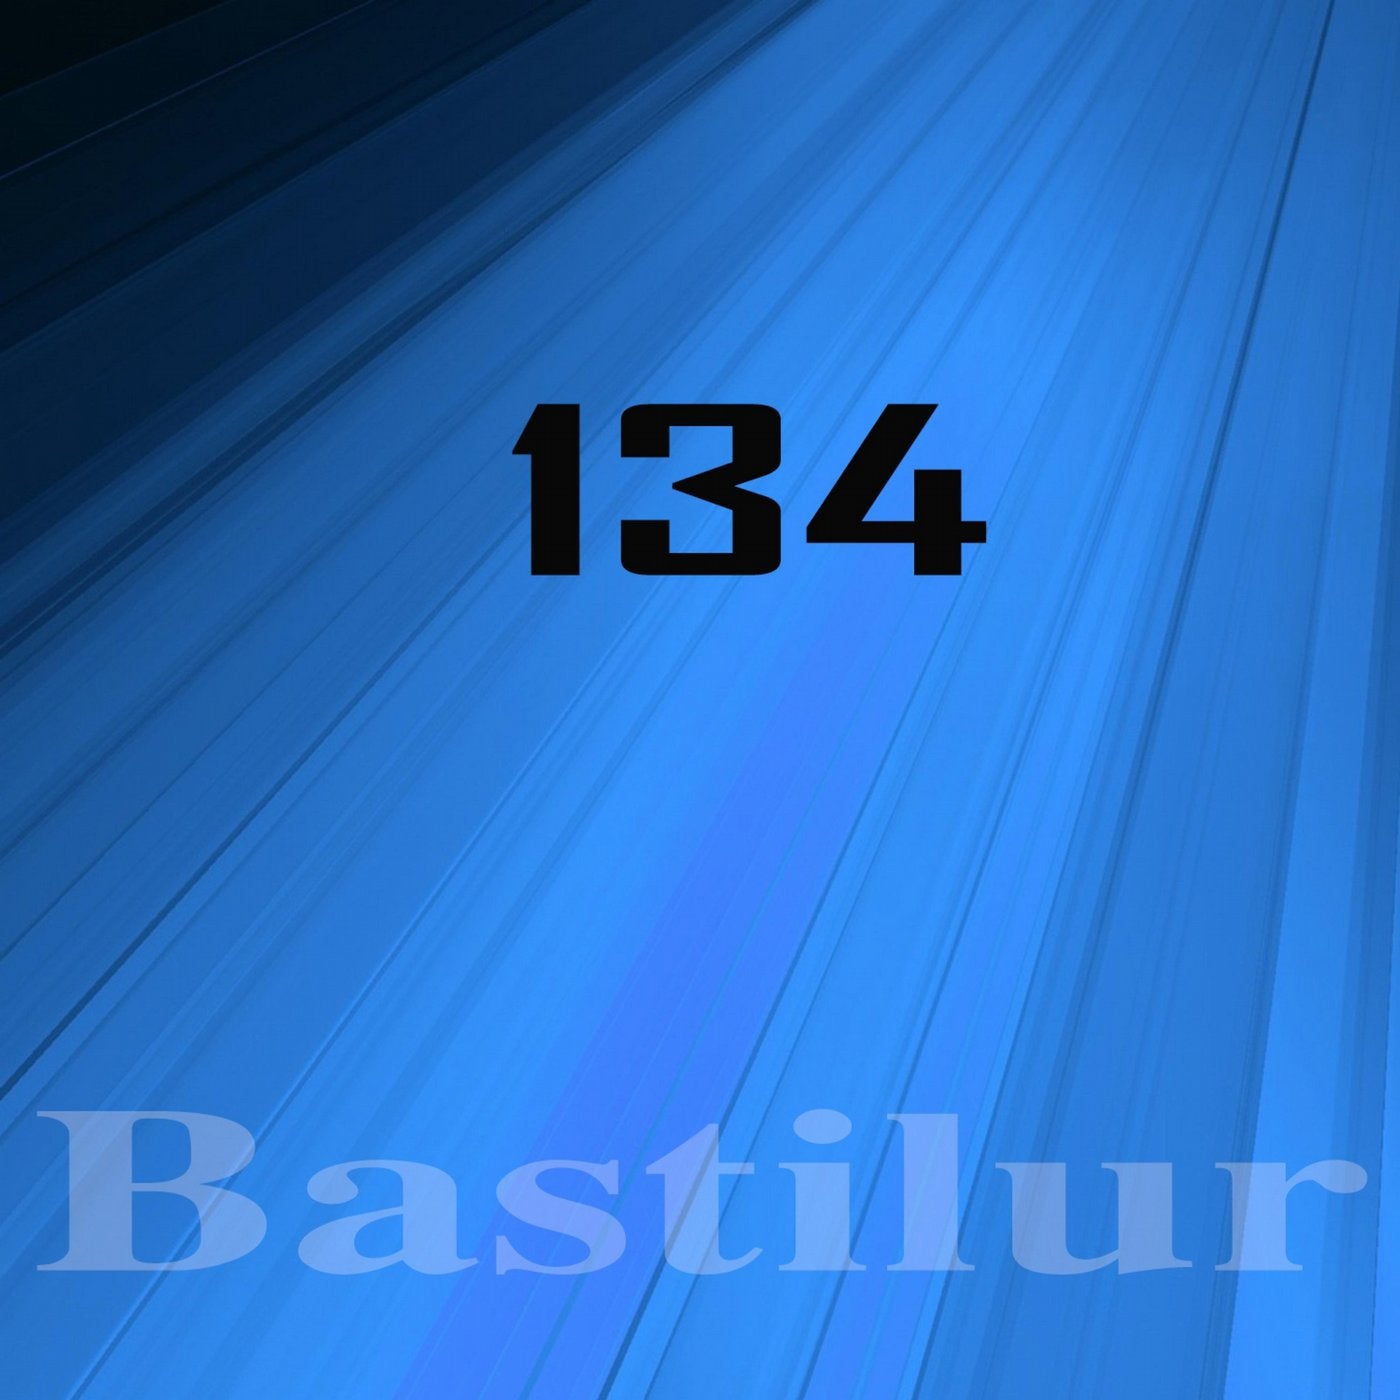 Bastilur, Vol.134